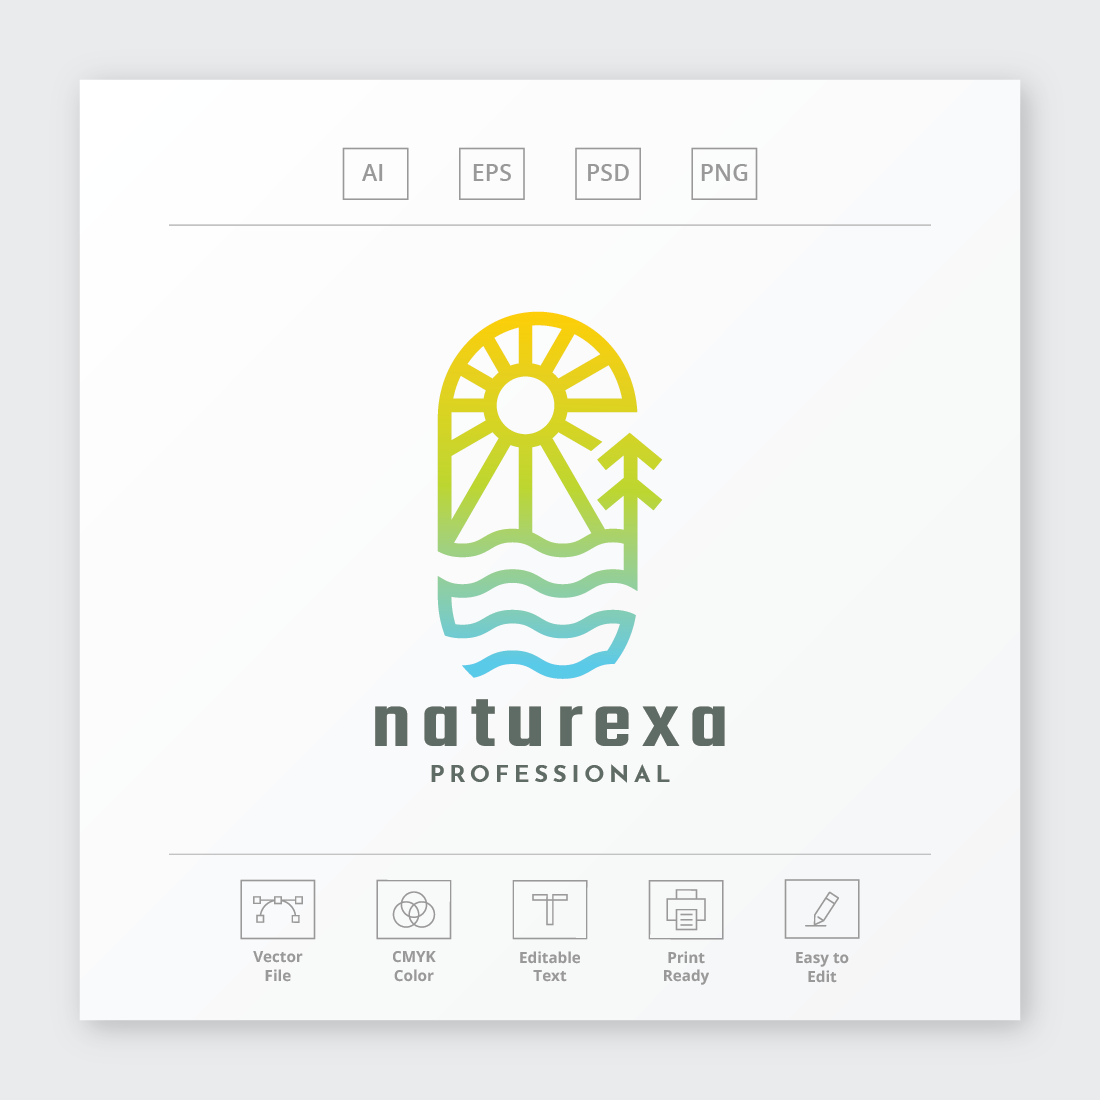 Naturexa Logo preview image.